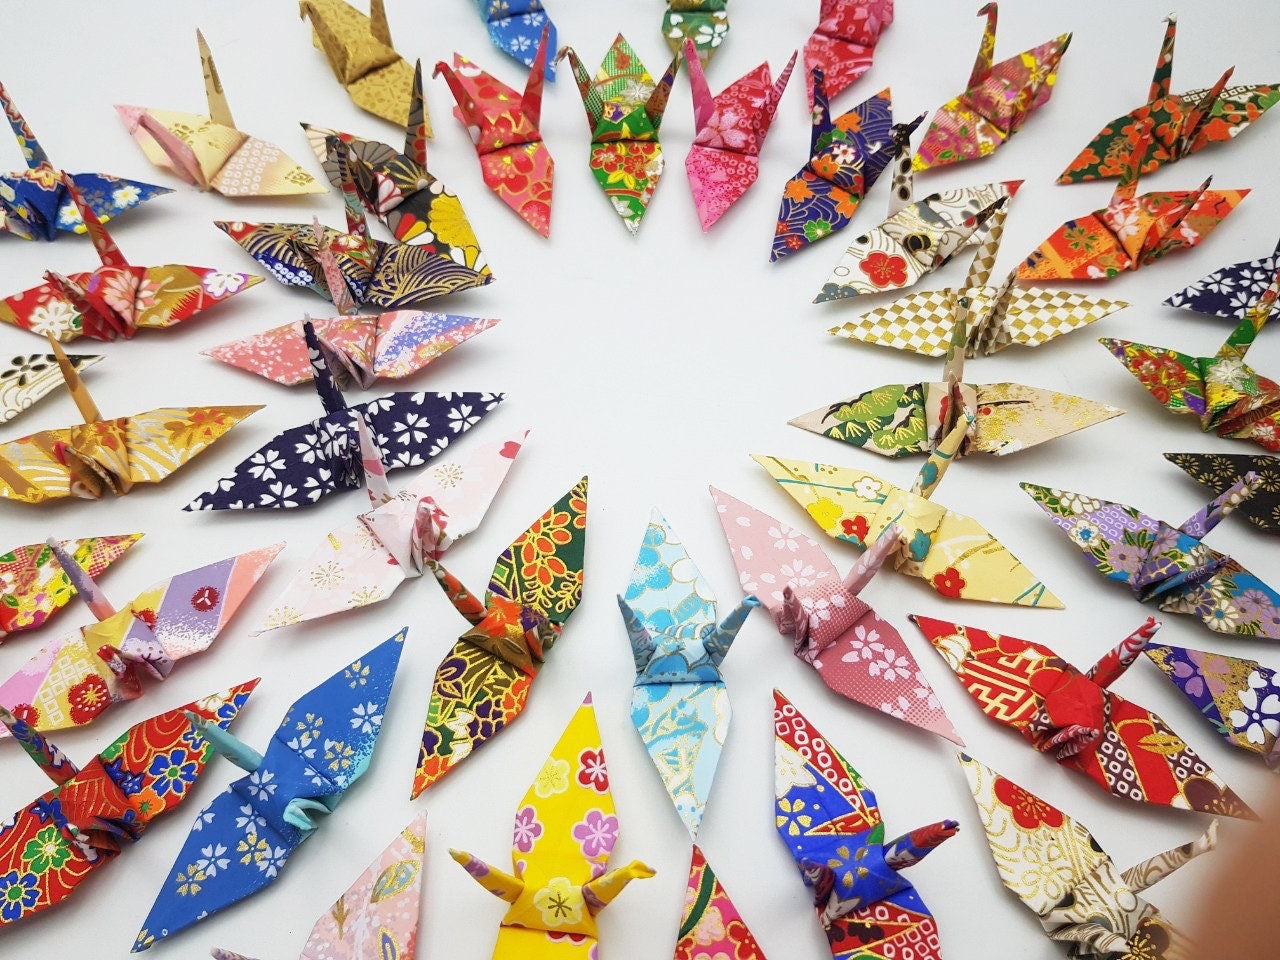 100 gru di carta origami carta Washi modelli misti gru origami realizzata con stampa giapponese 3x3 pollici carta chiyogami arte ornamento decorazione